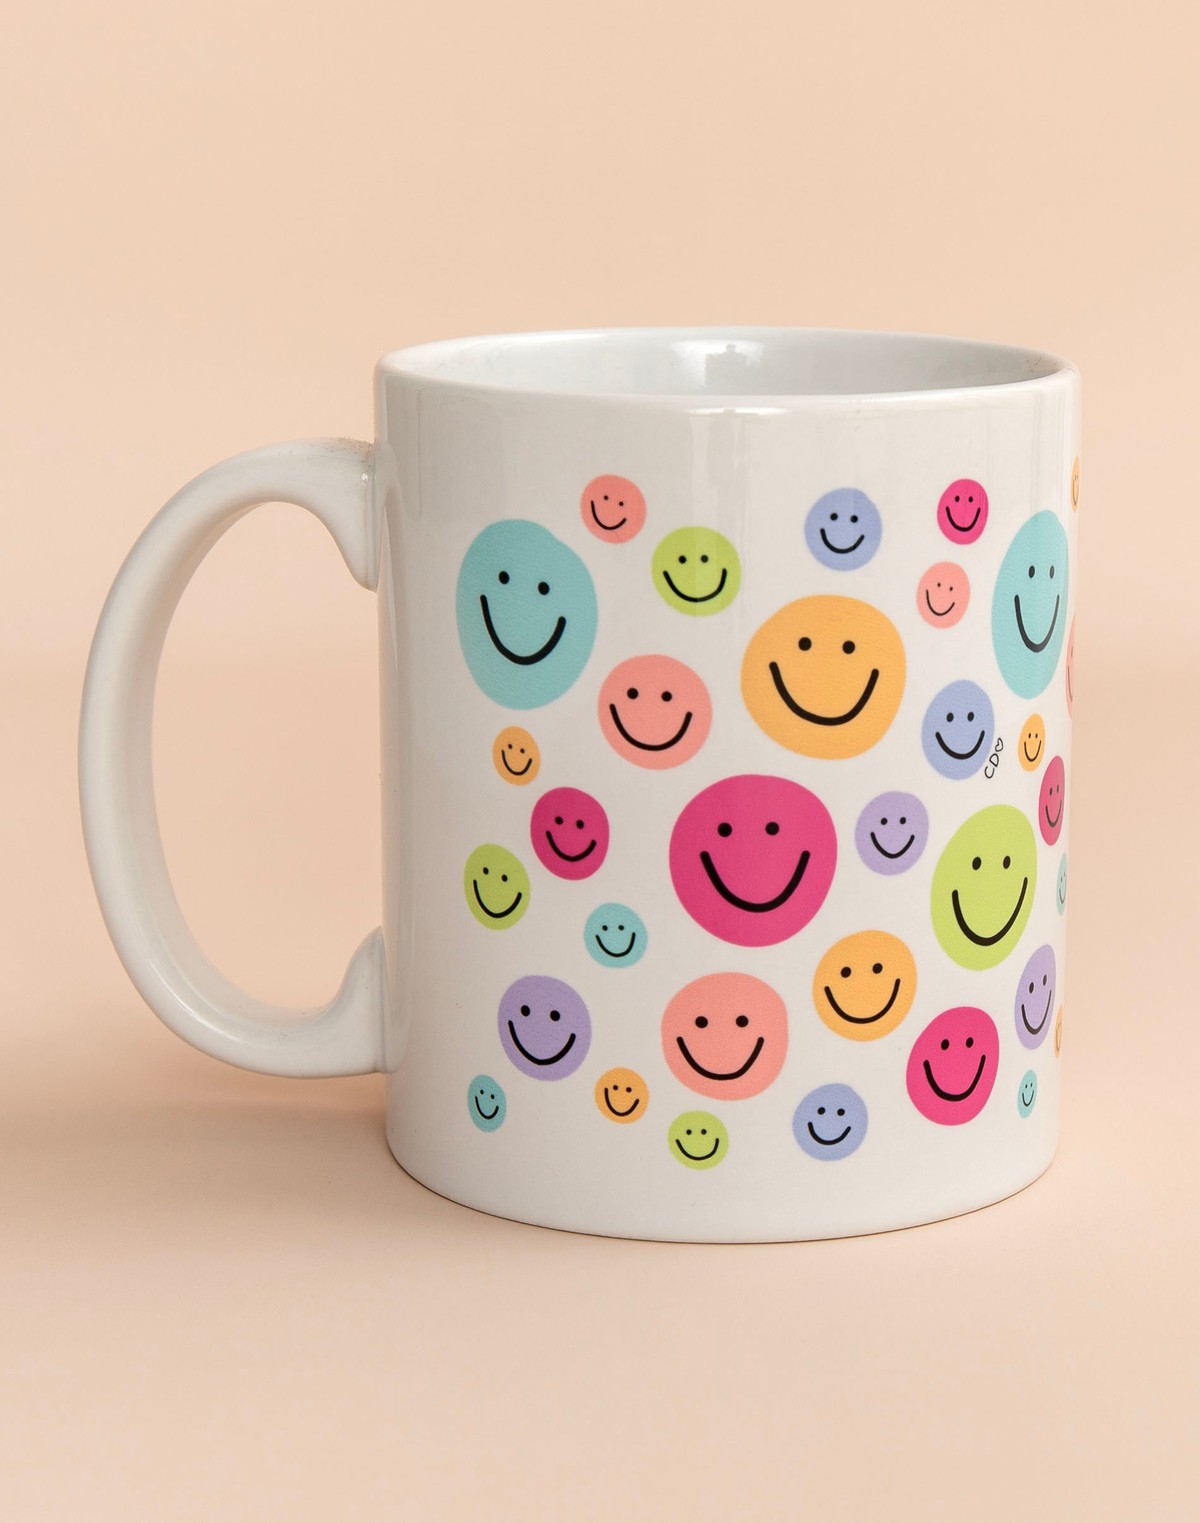 Smiley Faces Mug item